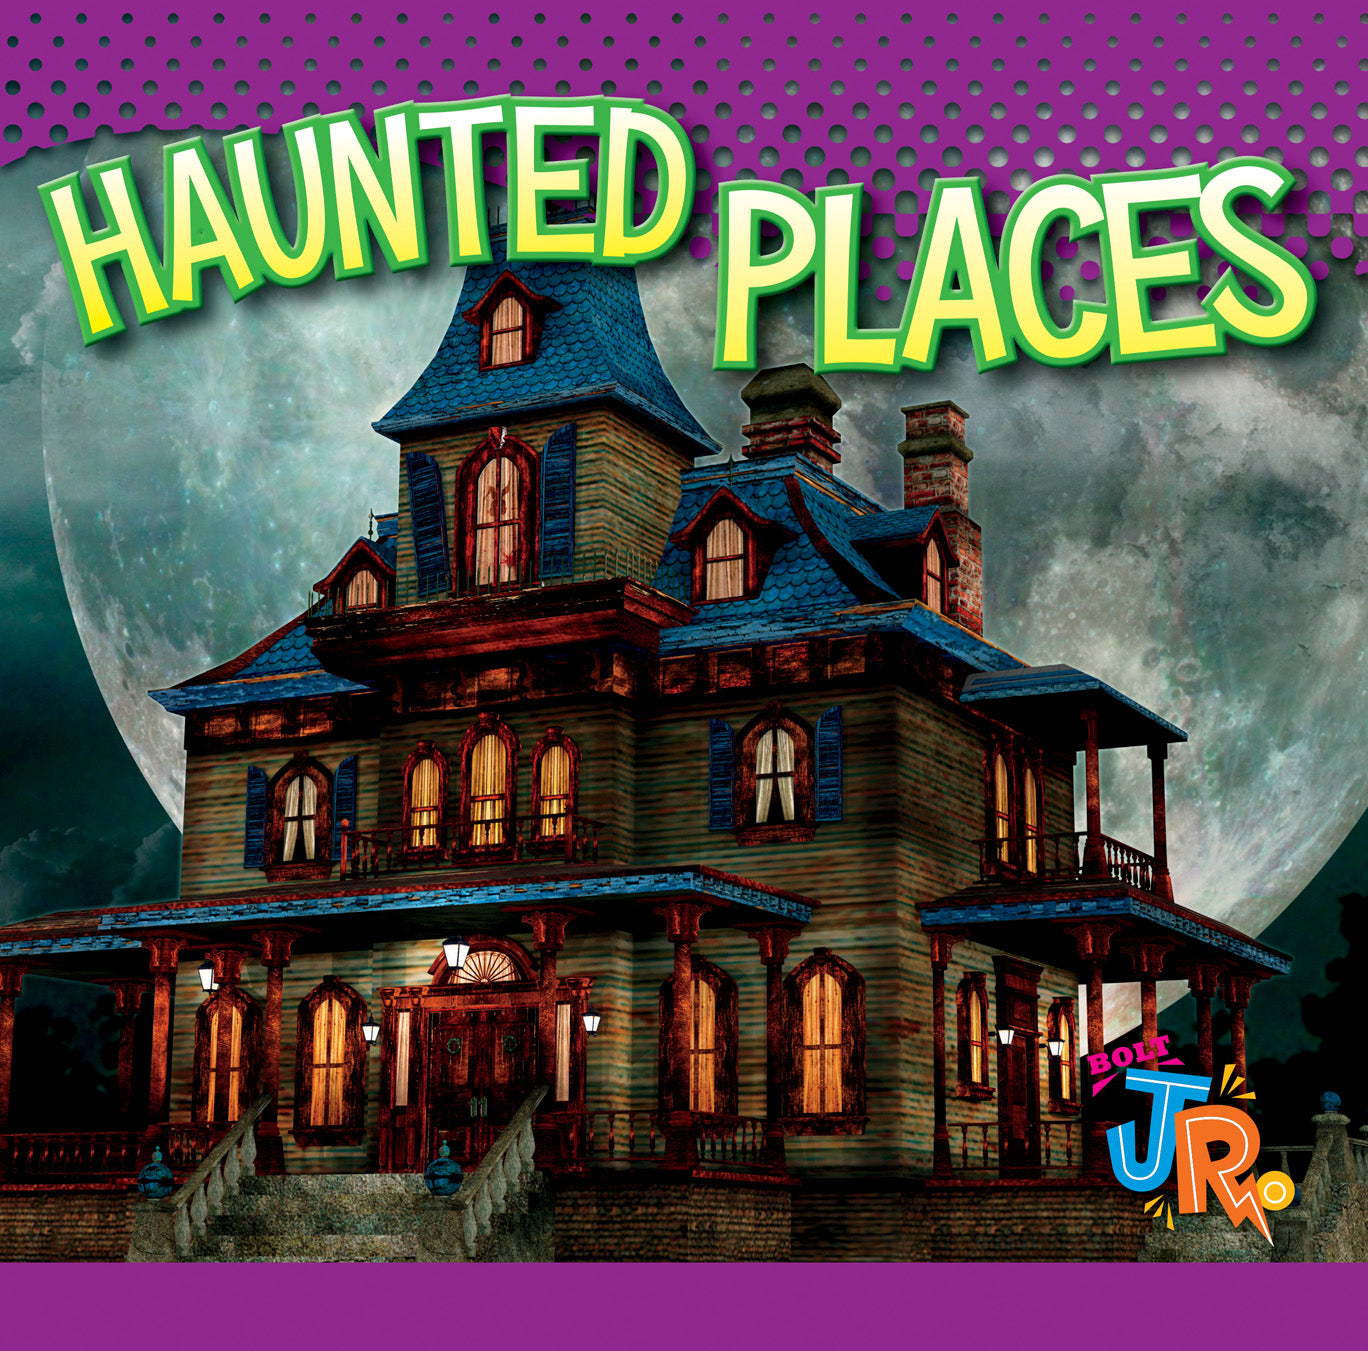 A Little Bit Spooky: Haunted Places